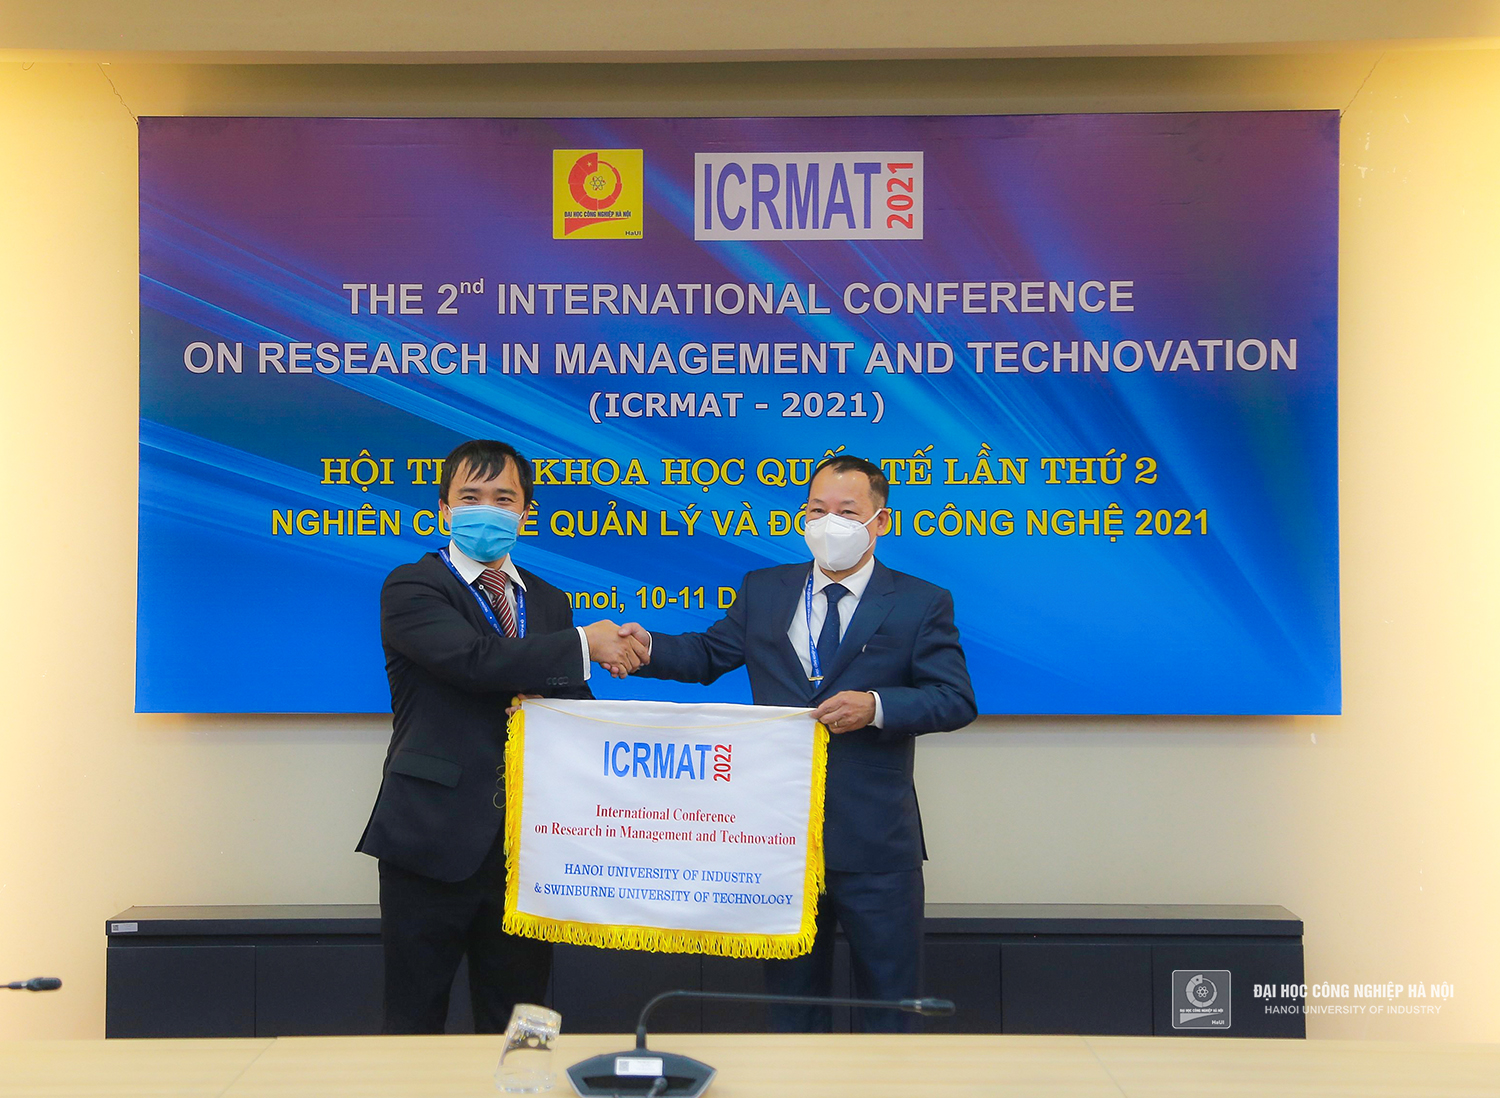 Hội thảo khoa học quốc tế Nghiên cứu về Quản lý và Đổi mới Công nghệ 2021 tại Đại học Công nghiệp Hà Nội